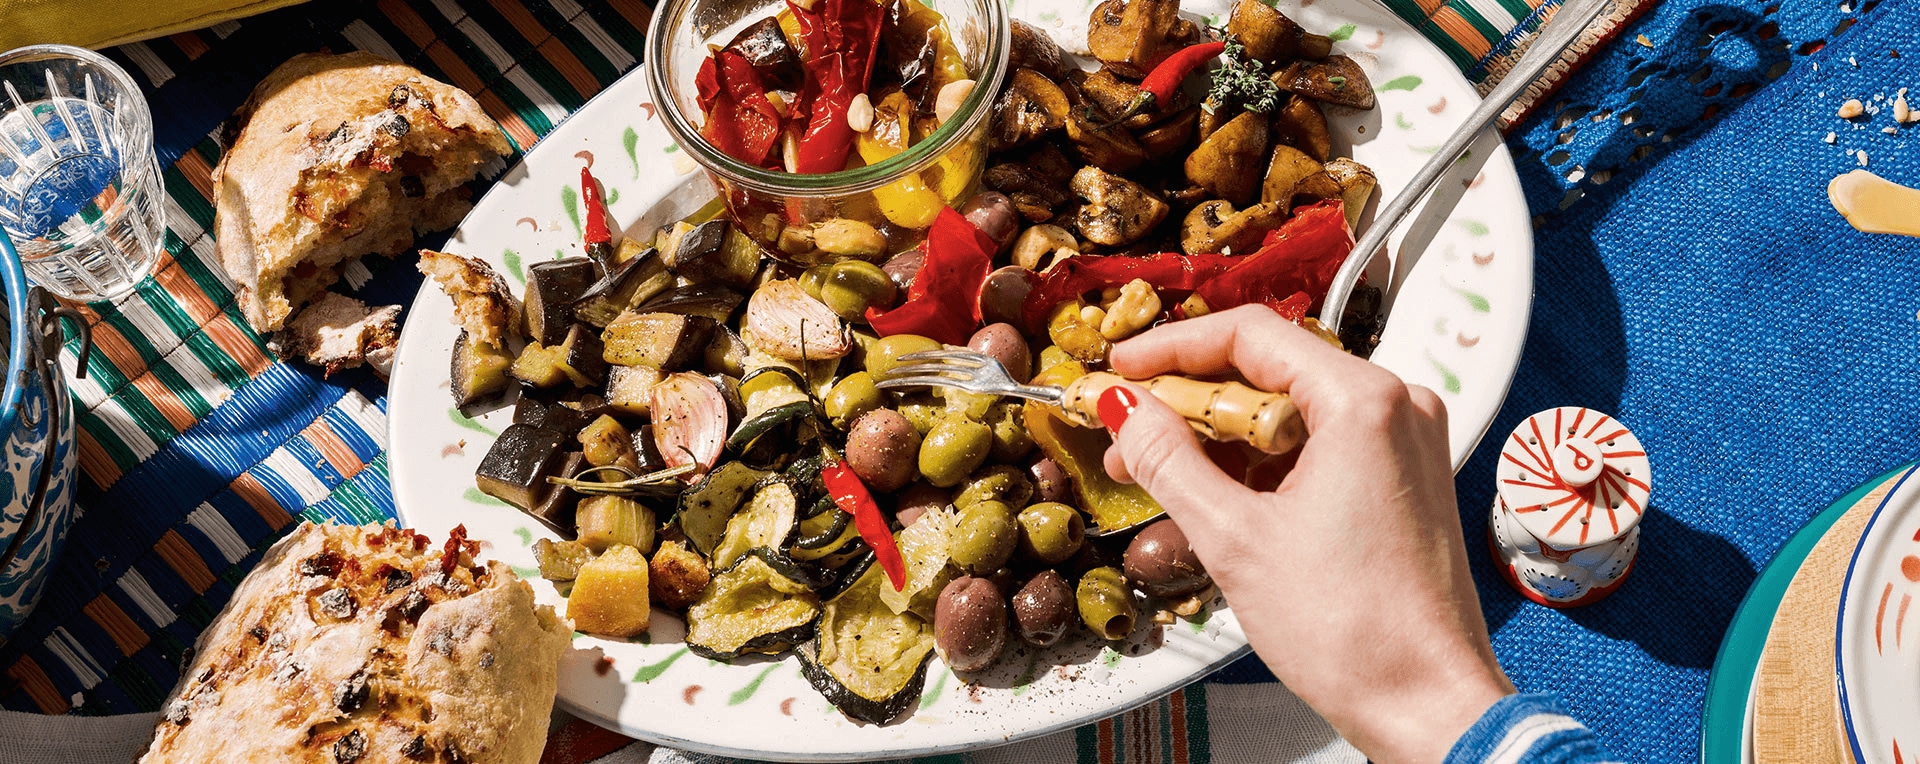 Antipasti-Teller mit Gemüse, Pilzen und Oliven